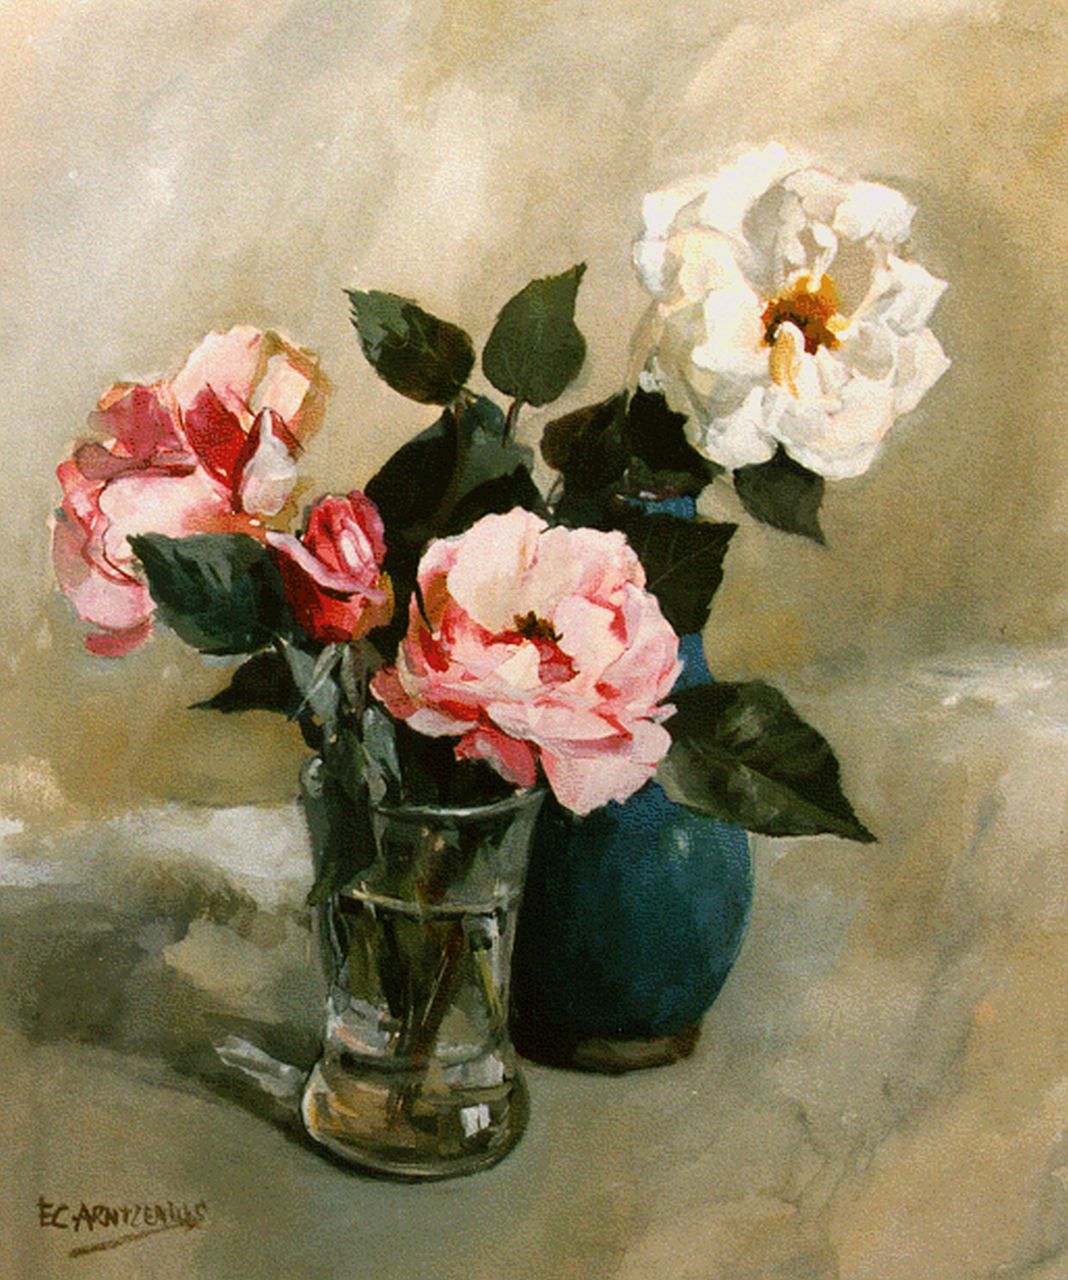 Arntzenius E.C.  | Elise Claudine Arntzenius, Stilleven met rozen, aquarel op papier 40,0 x 34,2 cm, gesigneerd linksonder